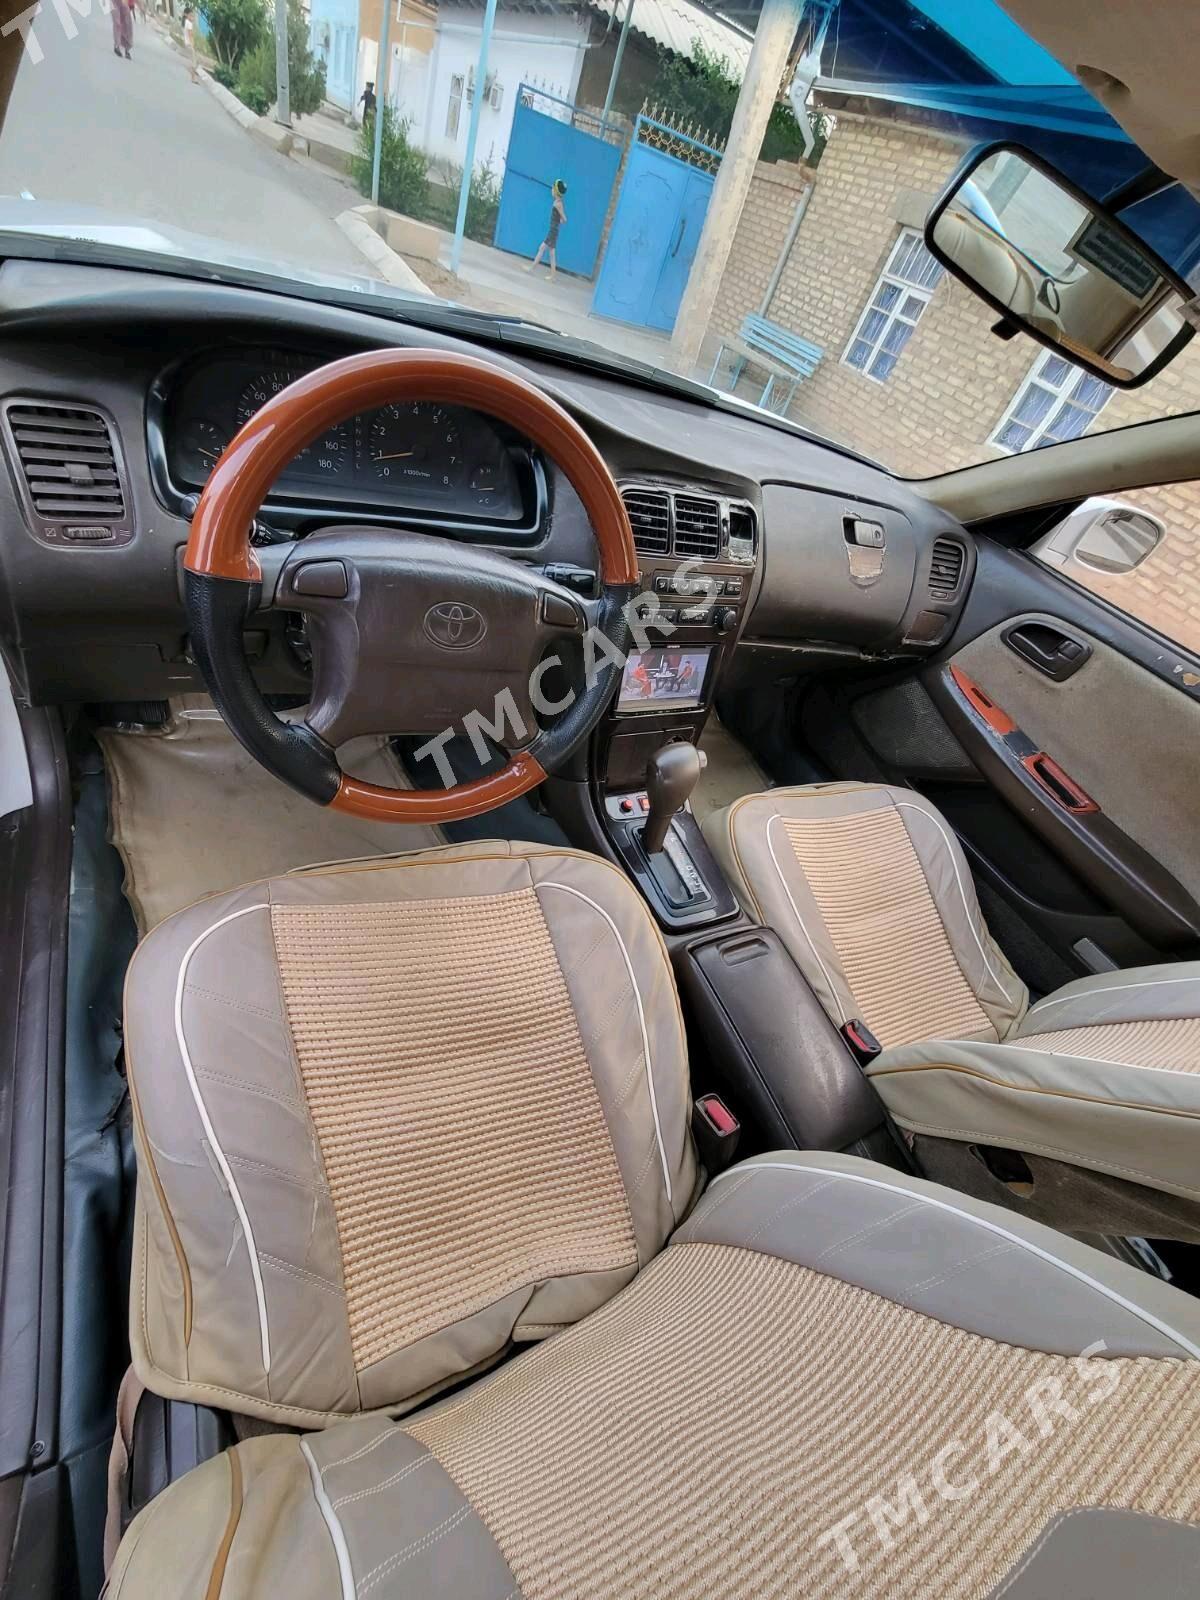 Toyota Mark II 1995 - 40 000 TMT - Серахс - img 6